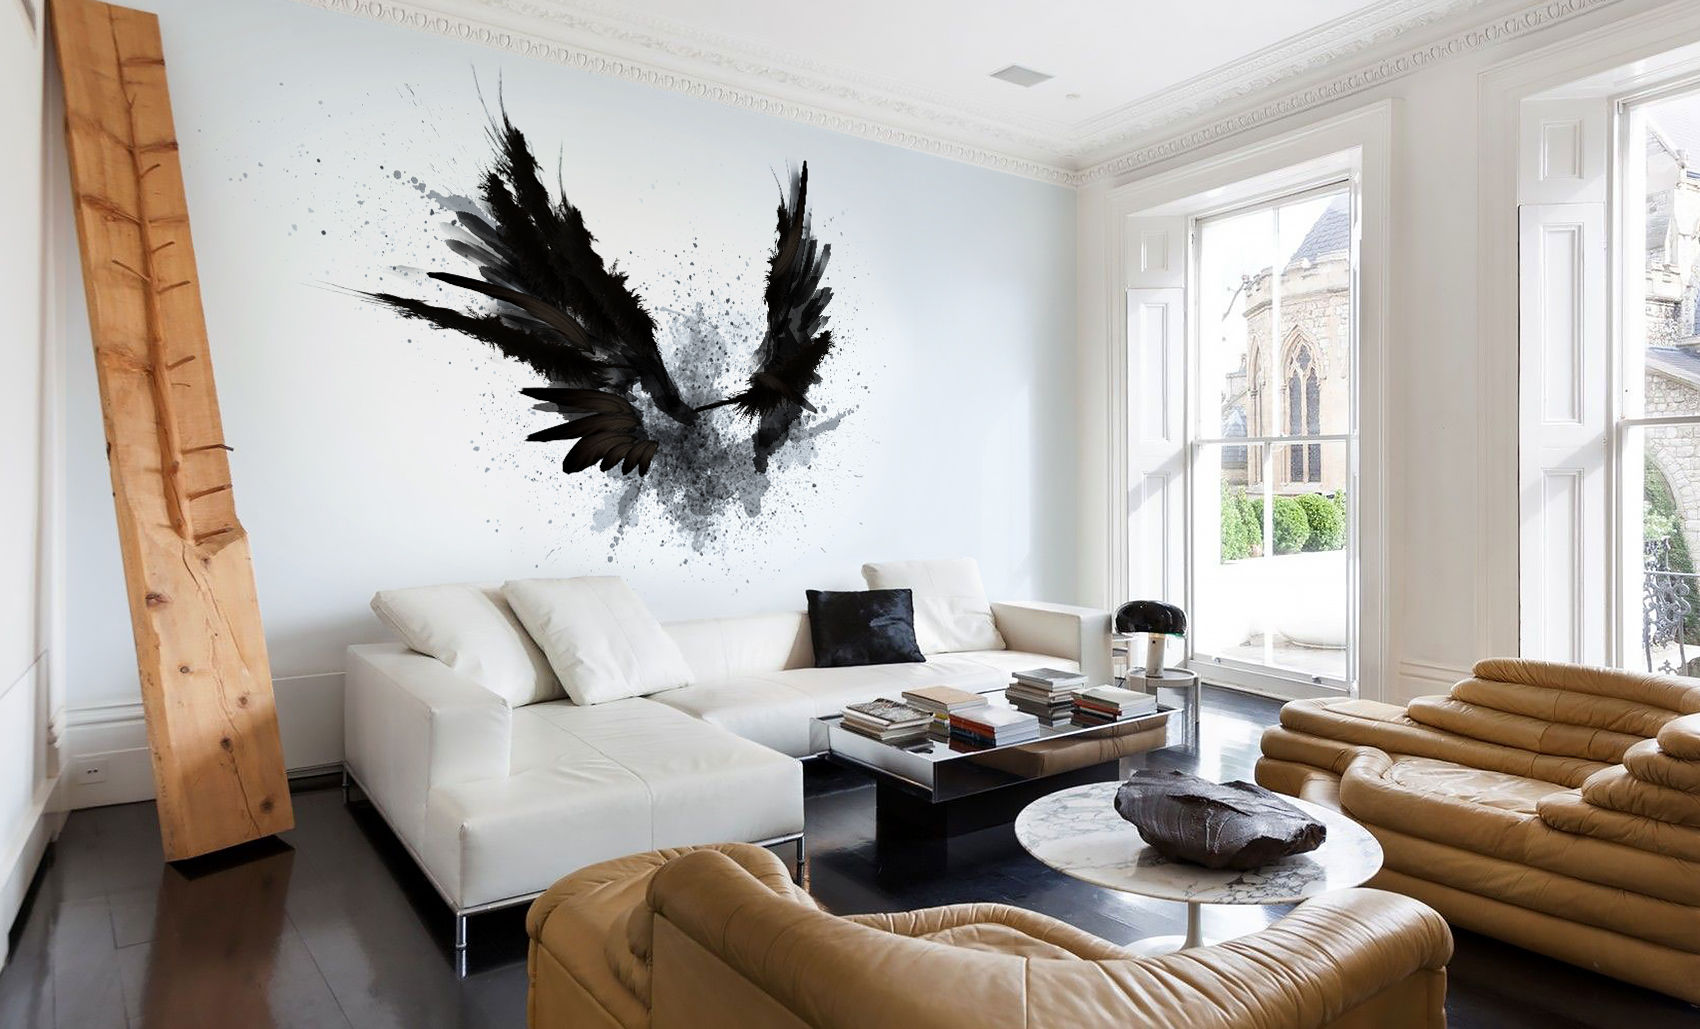 Black Wings Pixers Ruang Keluarga Modern wings,black,fantasy,wall mural,wallpaper